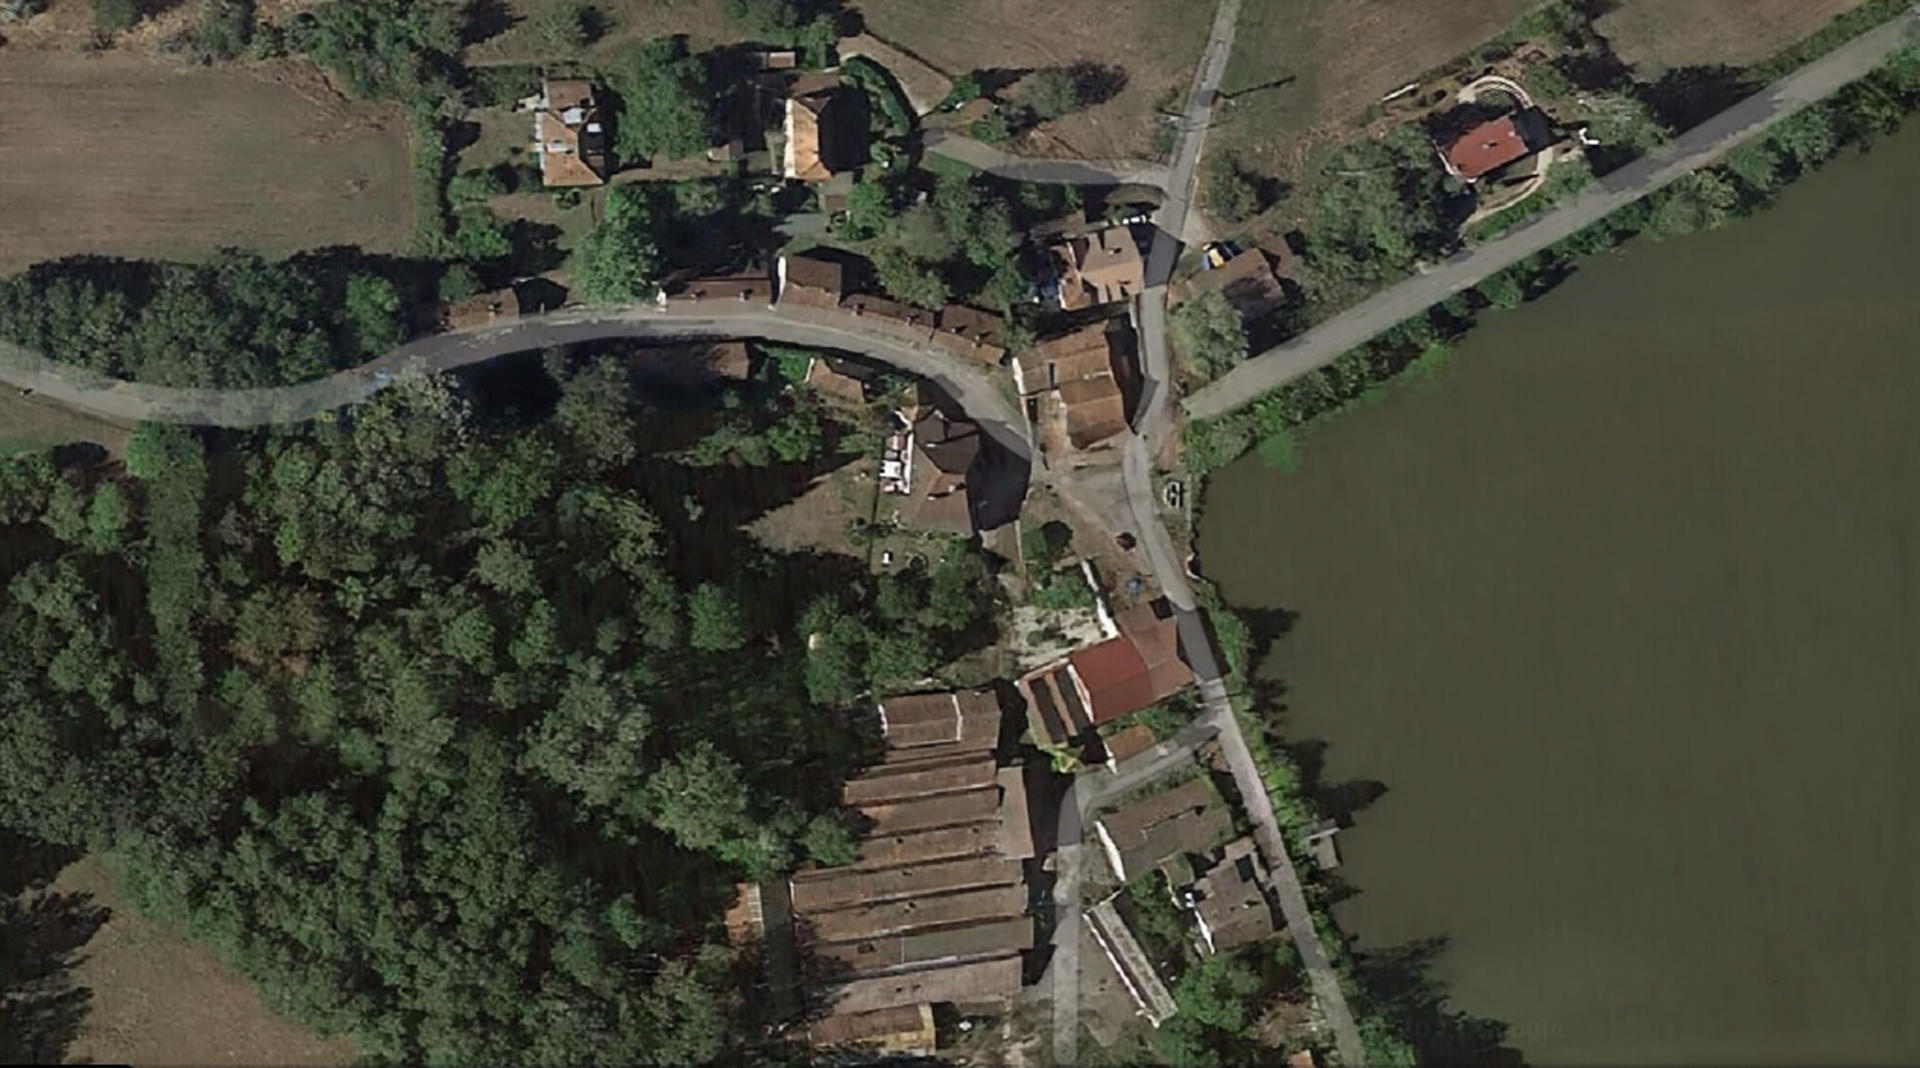 Le hameau du Beuchot, à Hautevelle (Haute-Saône), raconte à lui seul tout un pan de l’histoire industrielle du XIXe siècle en Franche-Comté. Google Maps